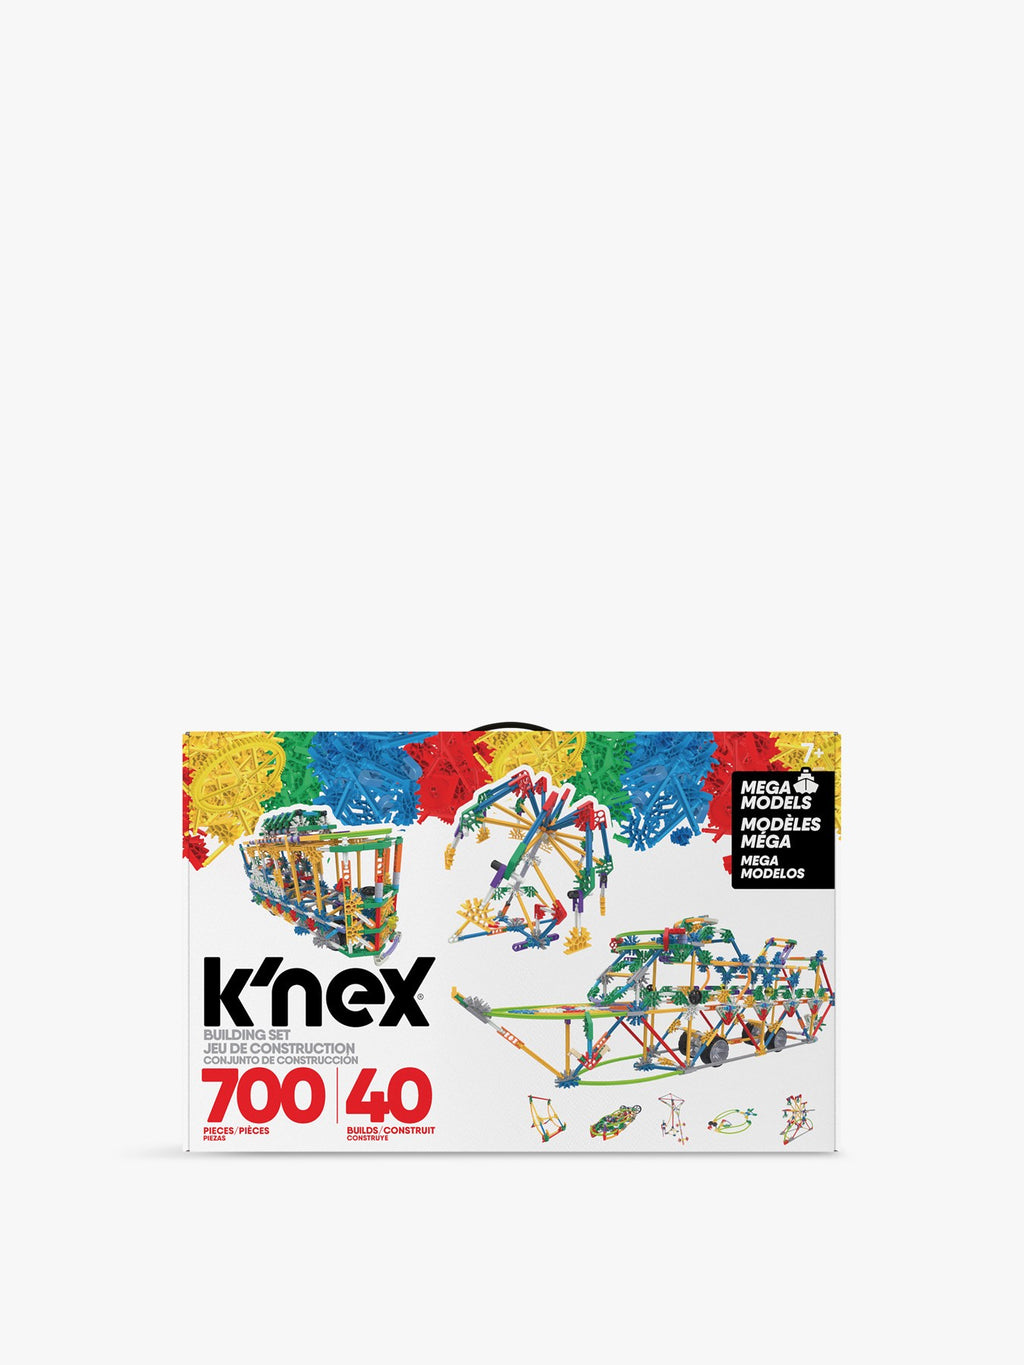 KNEX - MEGA MOTORIZED 700 PIECES 40 BUILDS